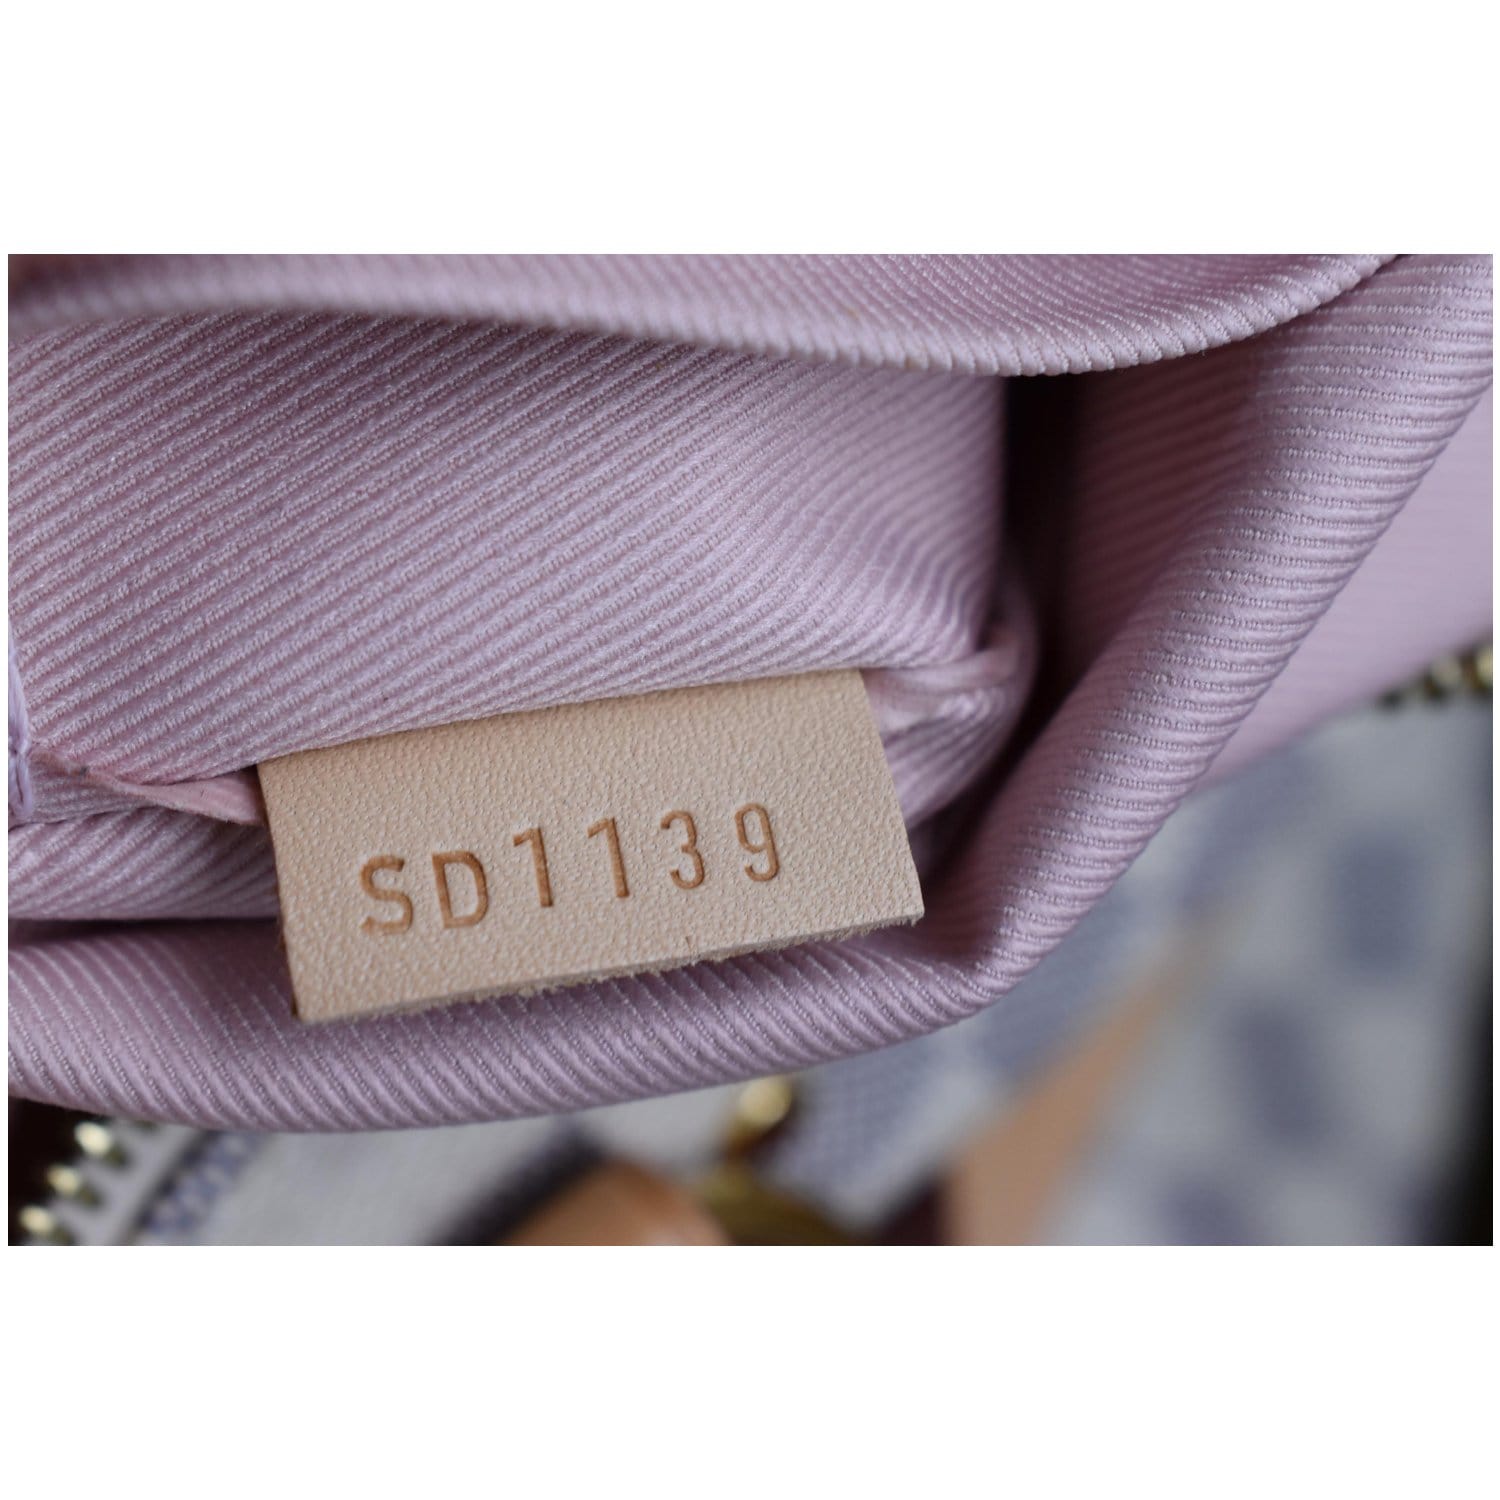 Louis Vuitton - LV Lymington Damier Azur Canvas Top Handle w/ Shoulder Strap Kit